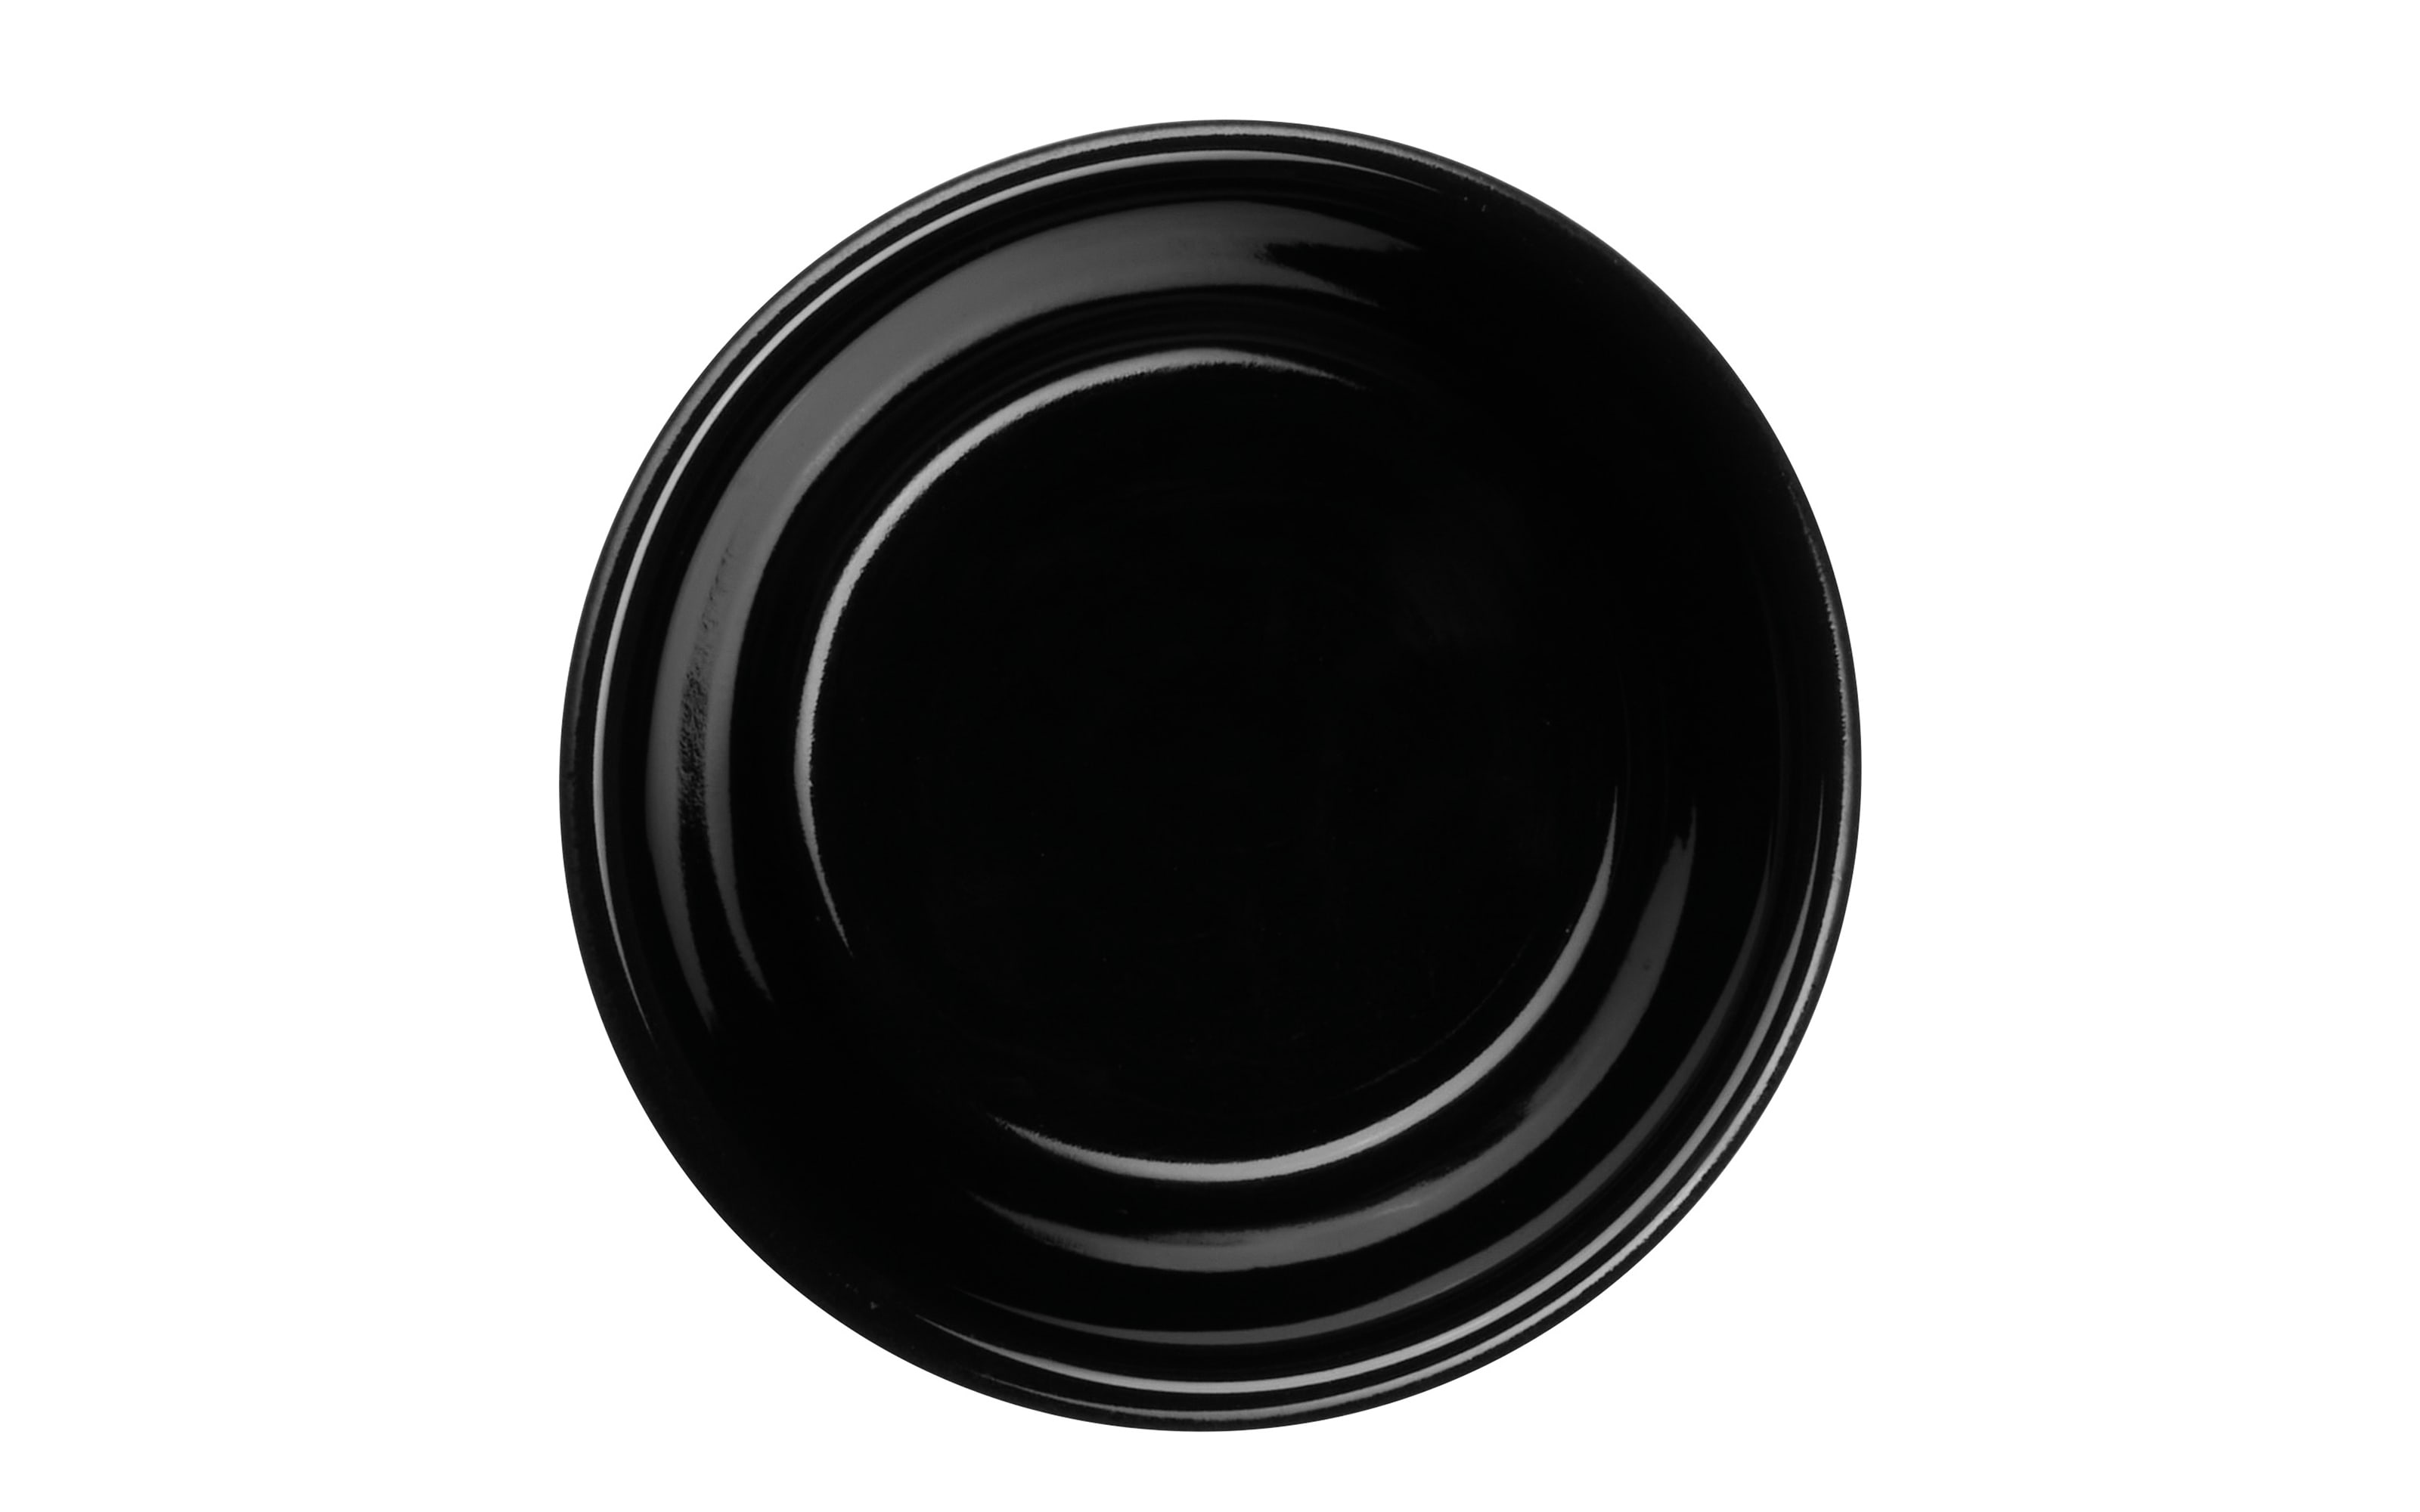 Auflaufform kitchen'art, black, 8 cm